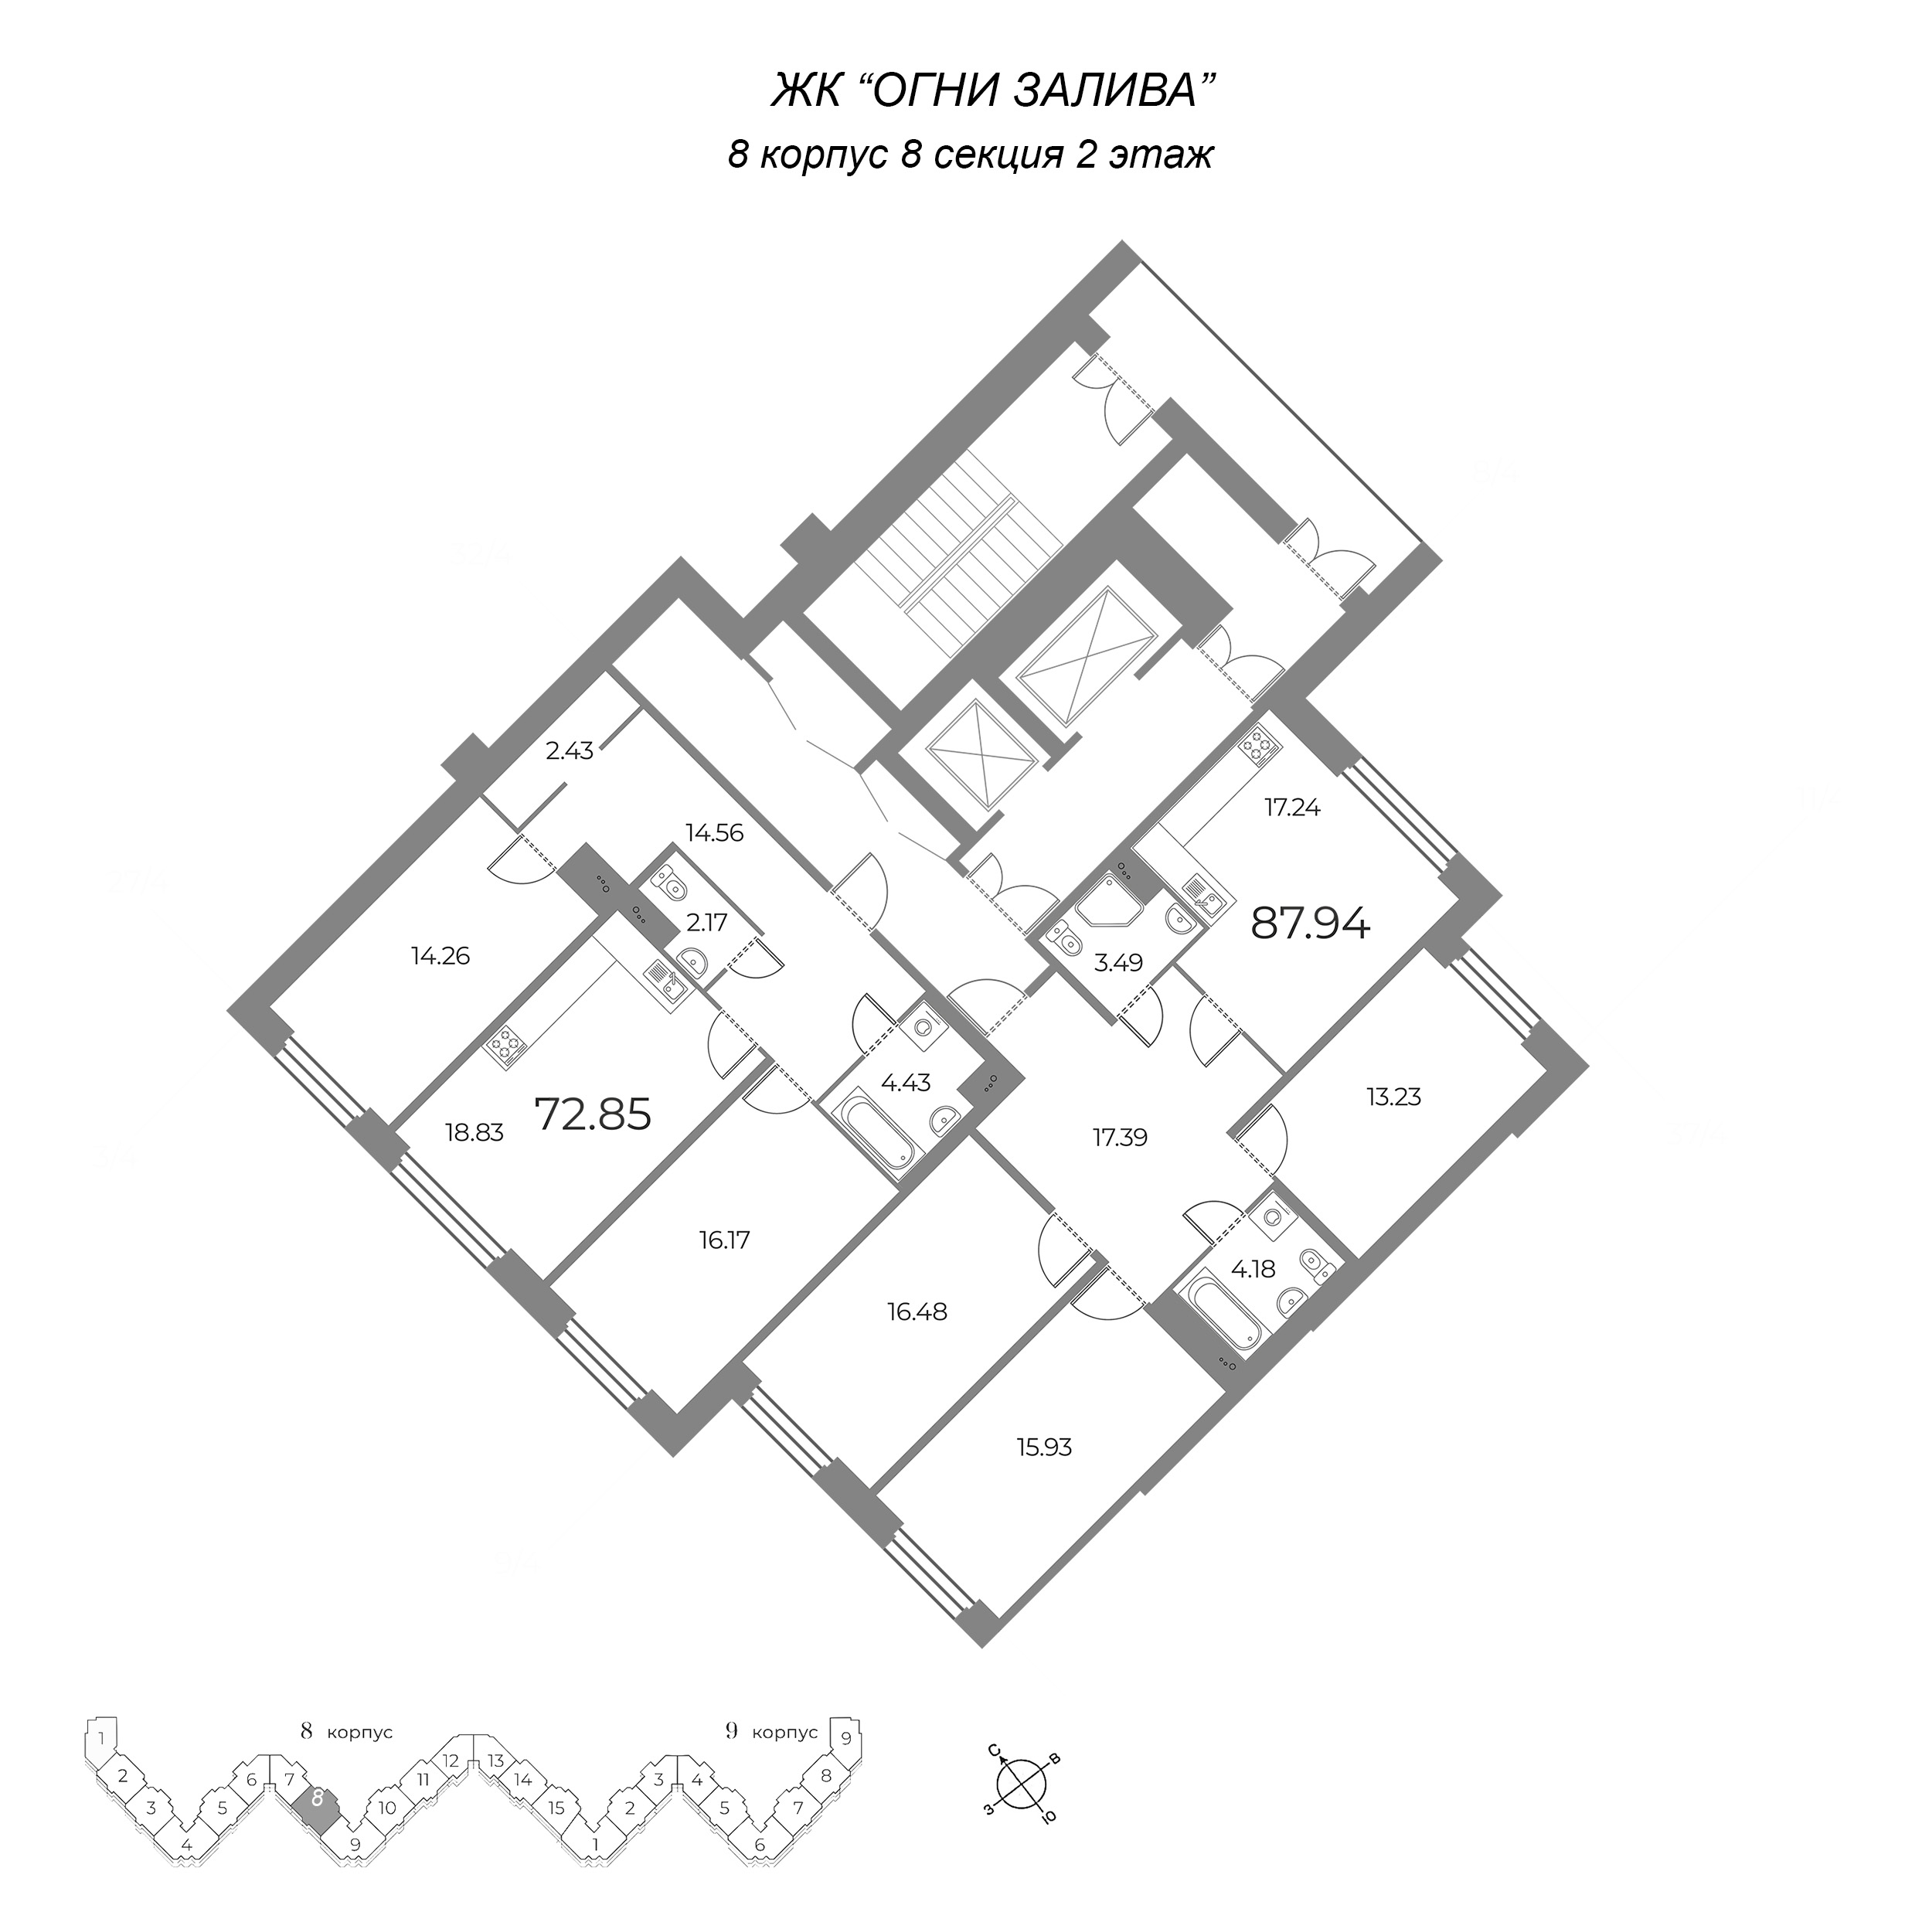 4-комнатная (Евро) квартира, 87.94 м² в ЖК "Огни Залива" - планировка этажа